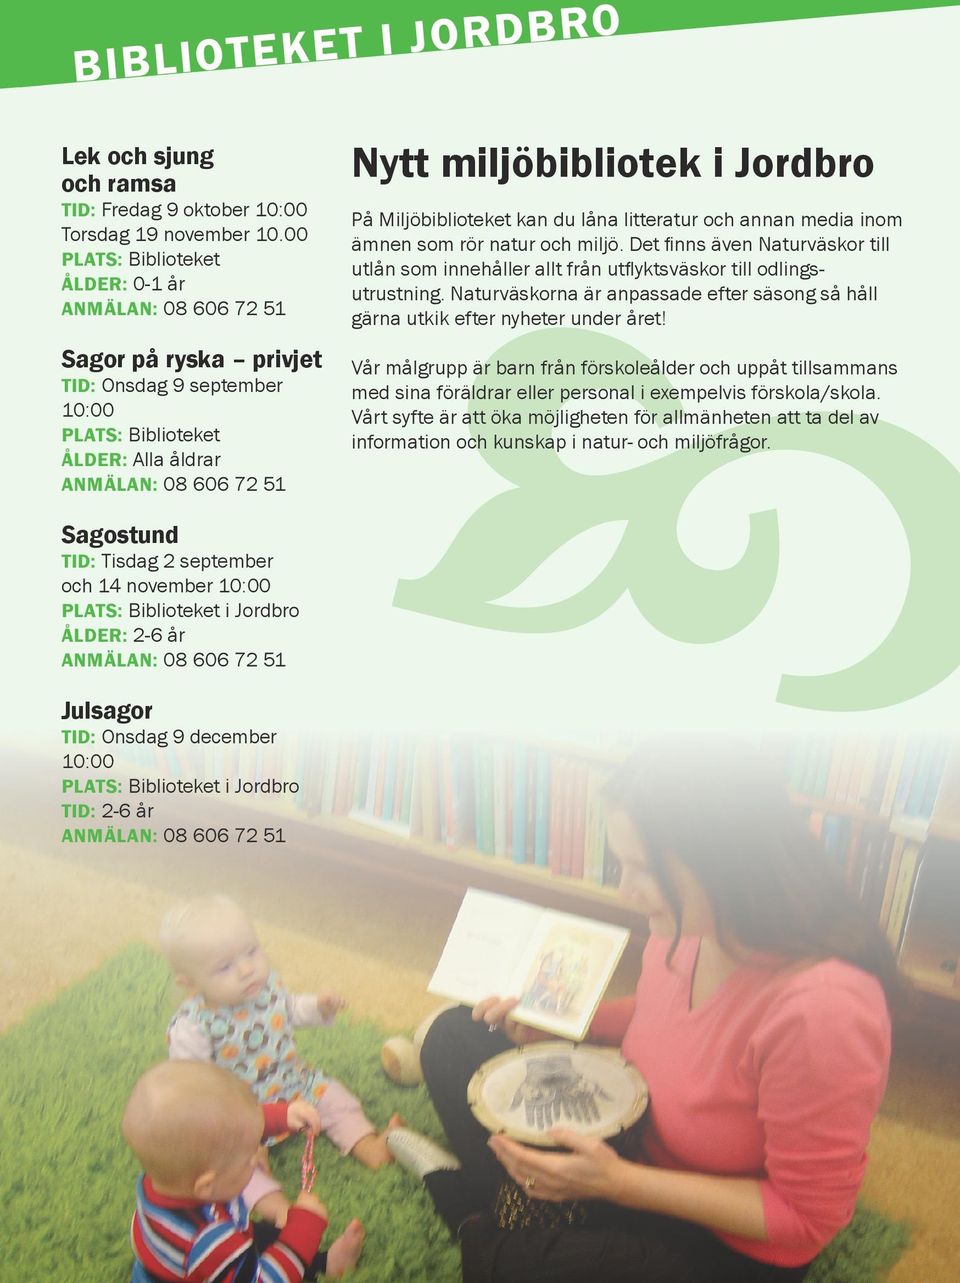 ÅLDER: 2-6 år ANMÄLAN: 08 606 72 51 c Nytt miljöbibliotek i Jordbro På Miljöbiblioteket kan du låna litteratur och annan media inom ämnen som rör natur och miljö.